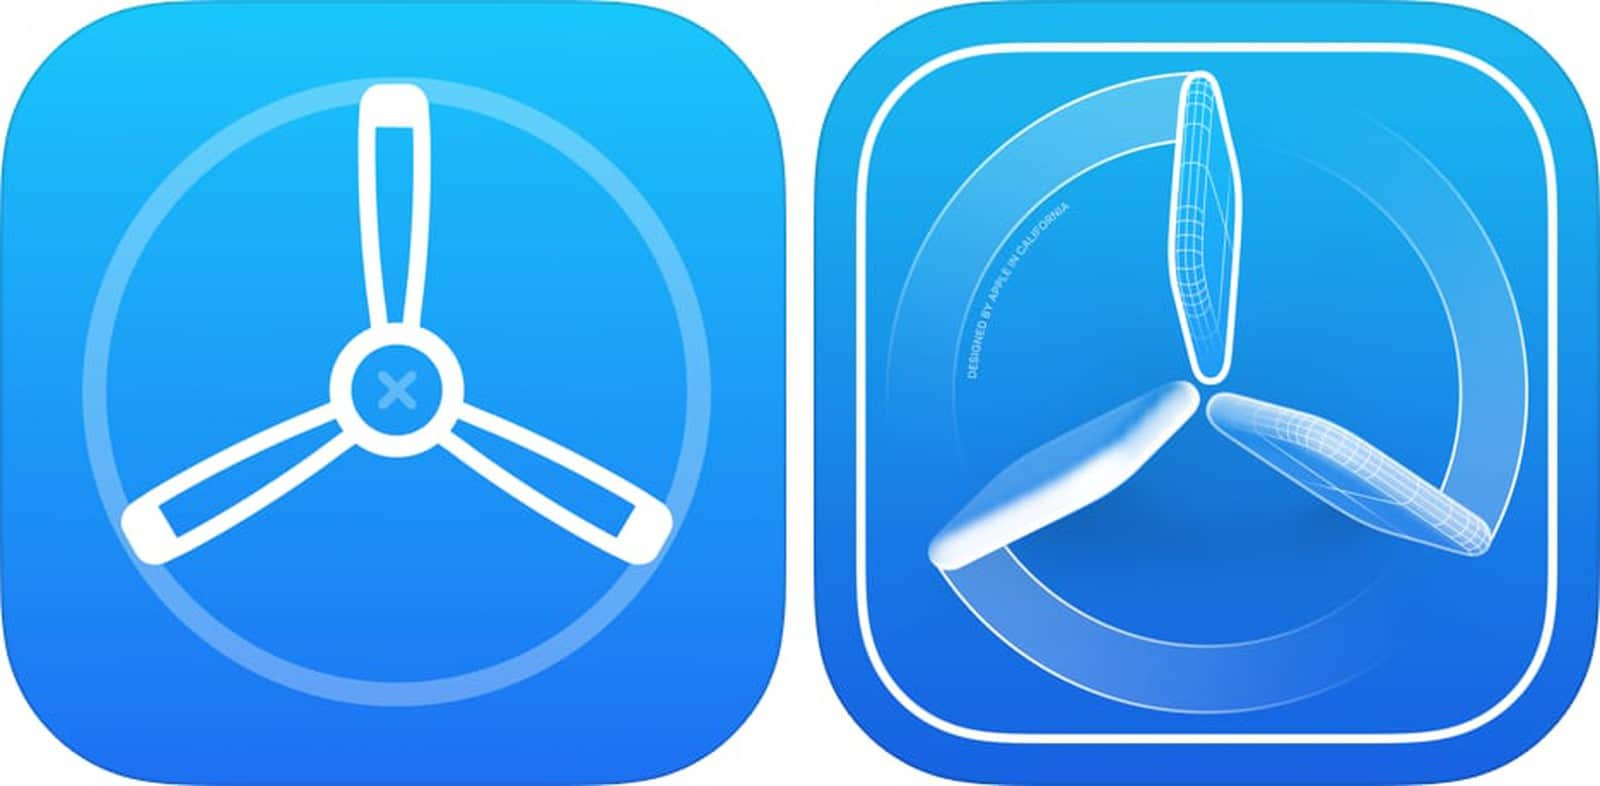 Iconos antiguos (izquierda) y nuevos (derecha) para la aplicación TestFlight de Apple